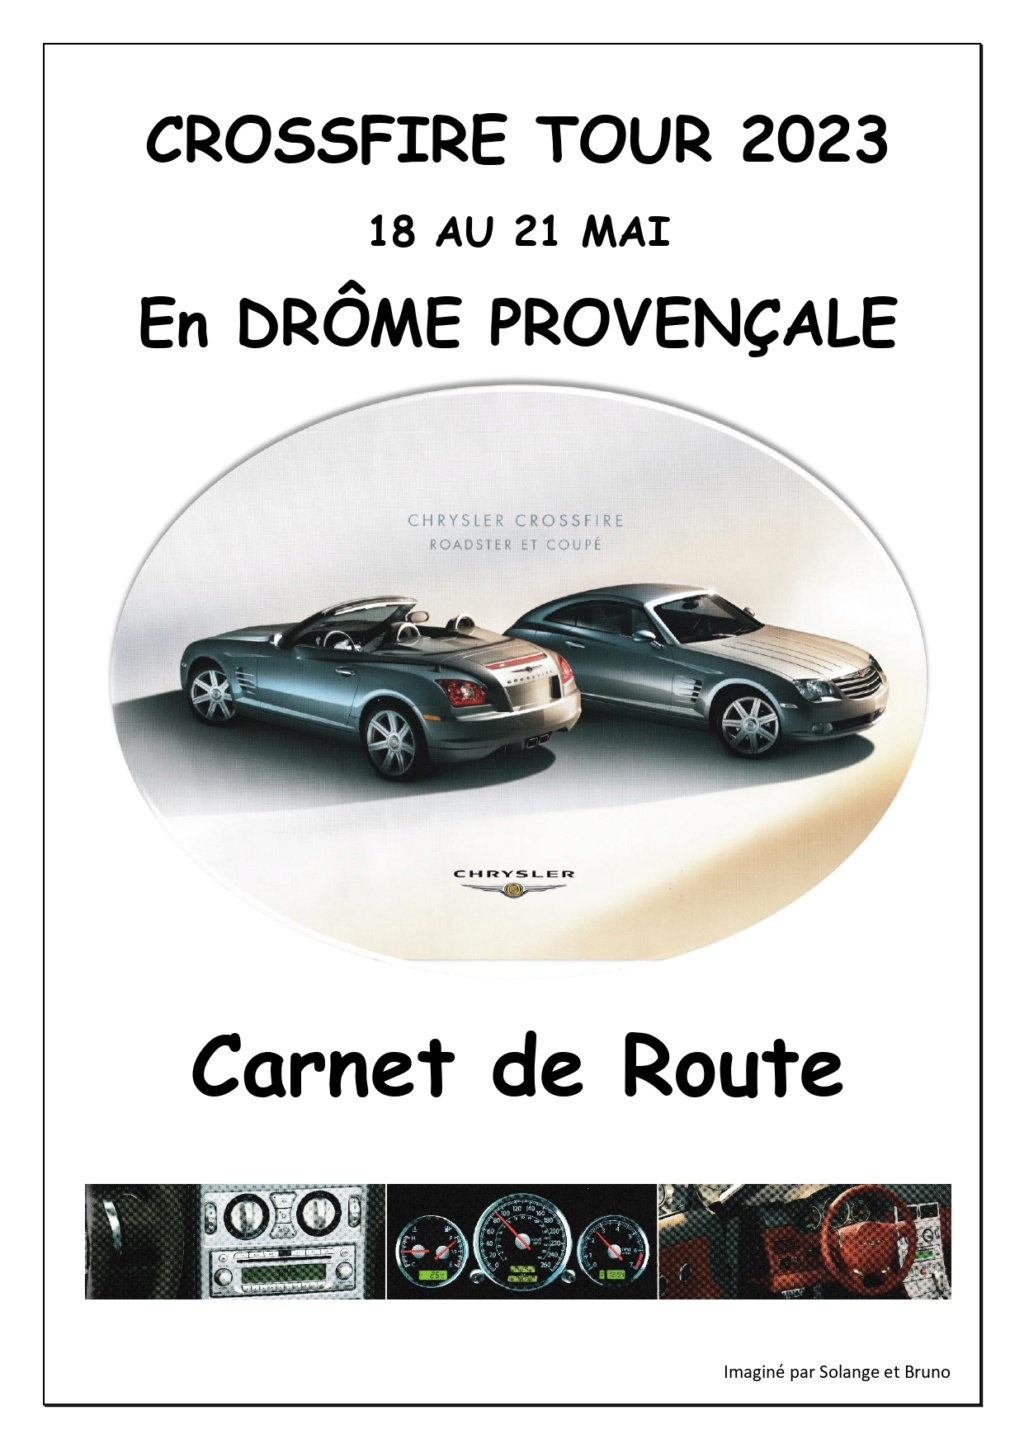 Crossfire Tour 2023 - Road trip, La Drôme provençale et l'Ardèche voisine. - Page 7 Carnet10